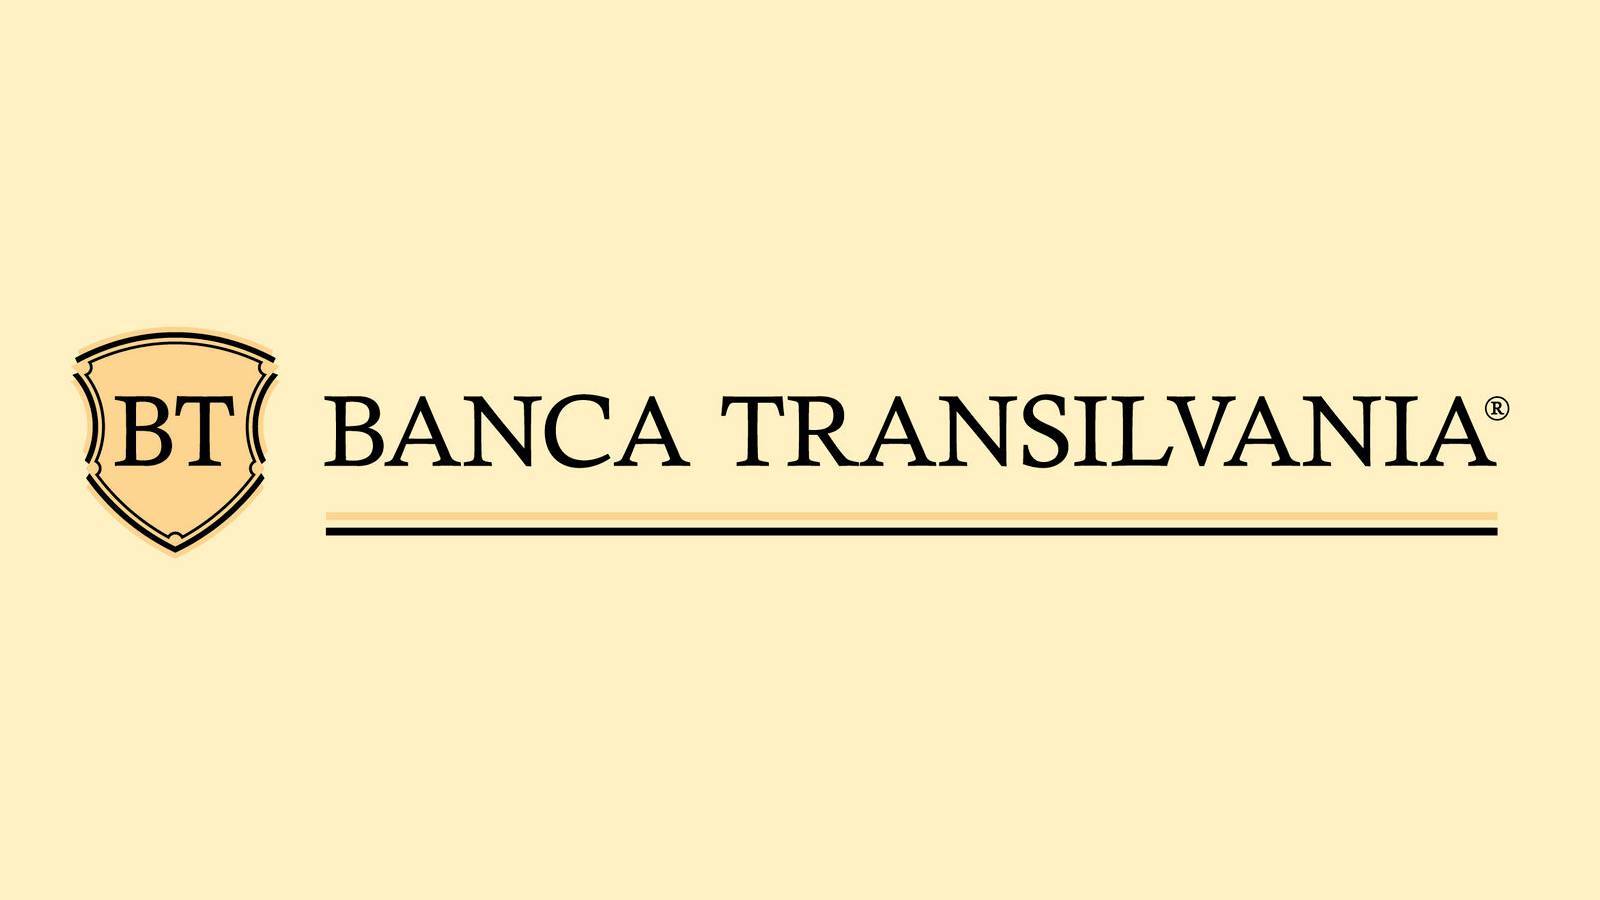 BANCA Transilvania Mesures Officielles DERNIER MOMENT Des Millions de Clients Roumains